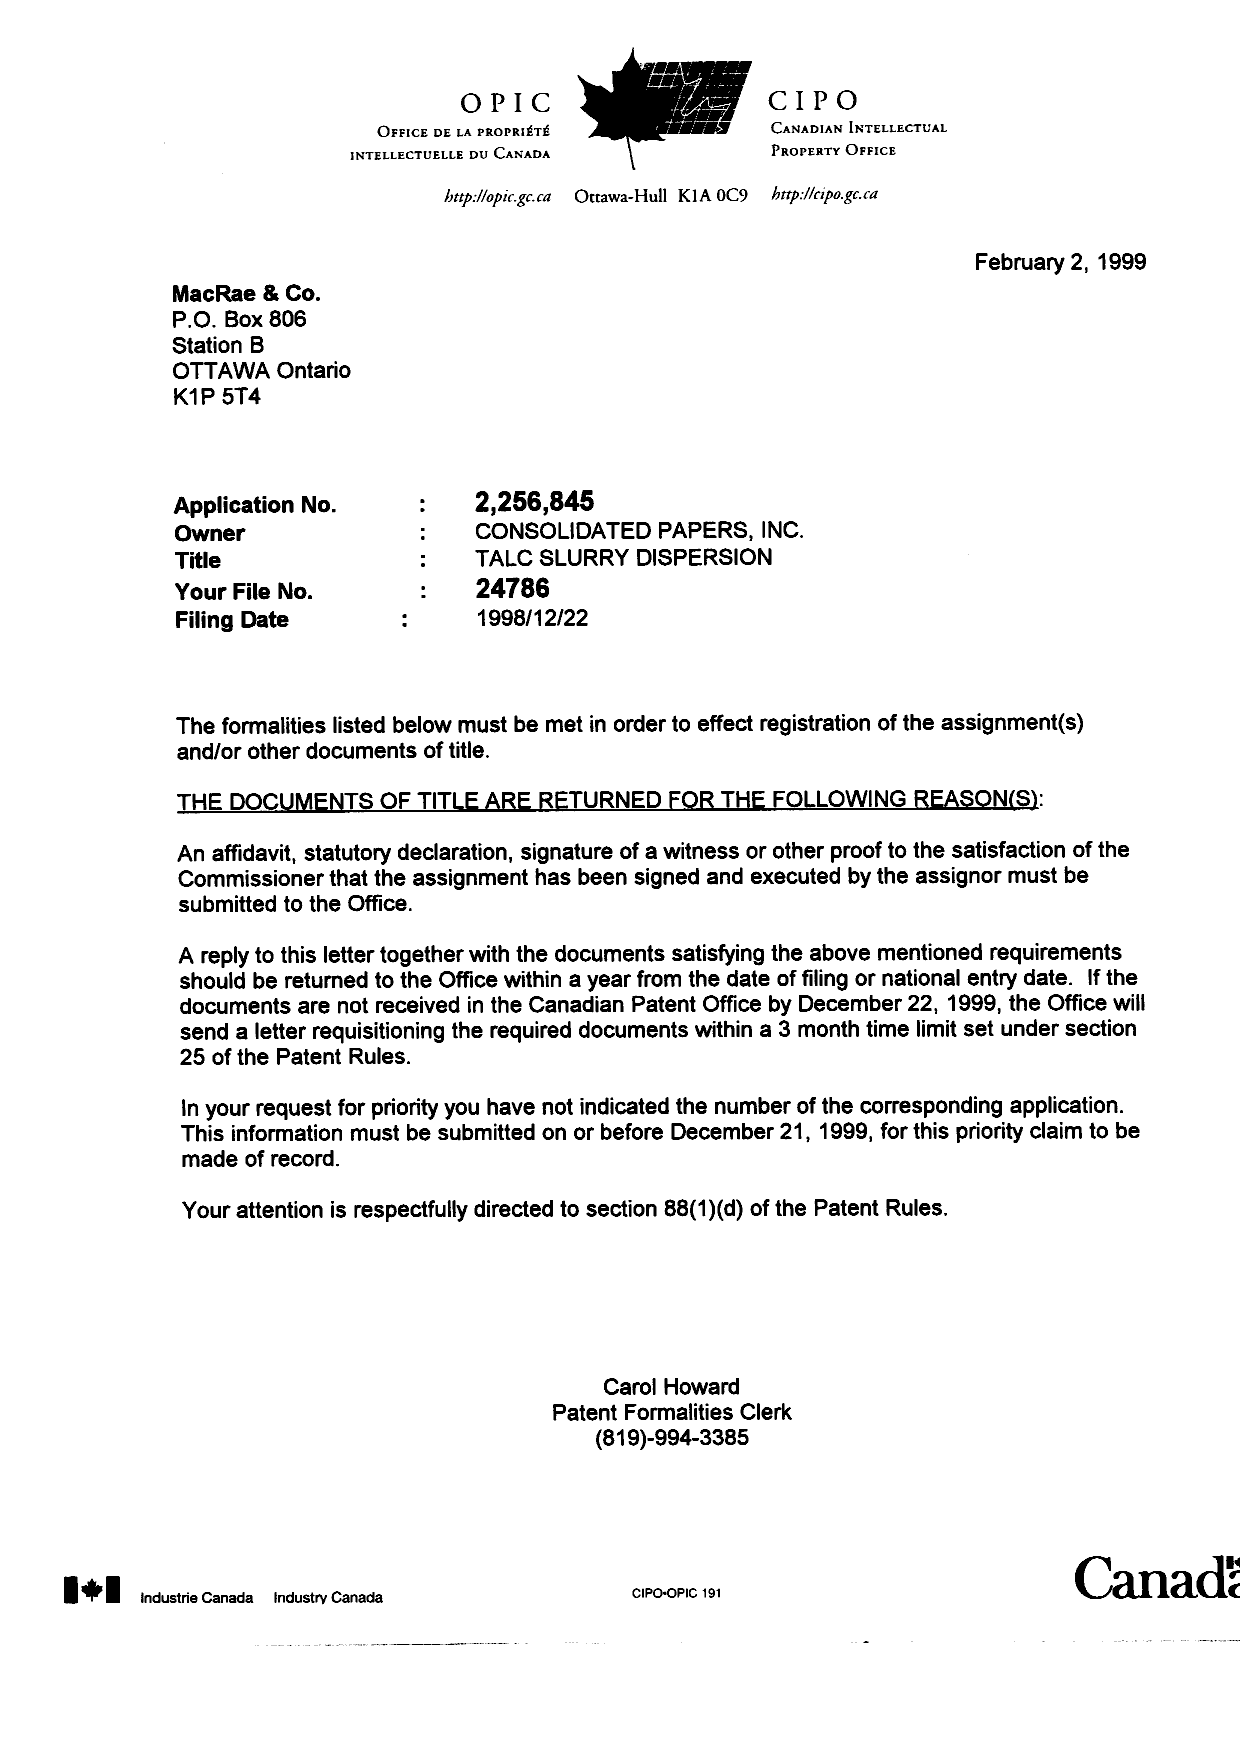 Document de brevet canadien 2256845. Correspondance 19990202. Image 1 de 1